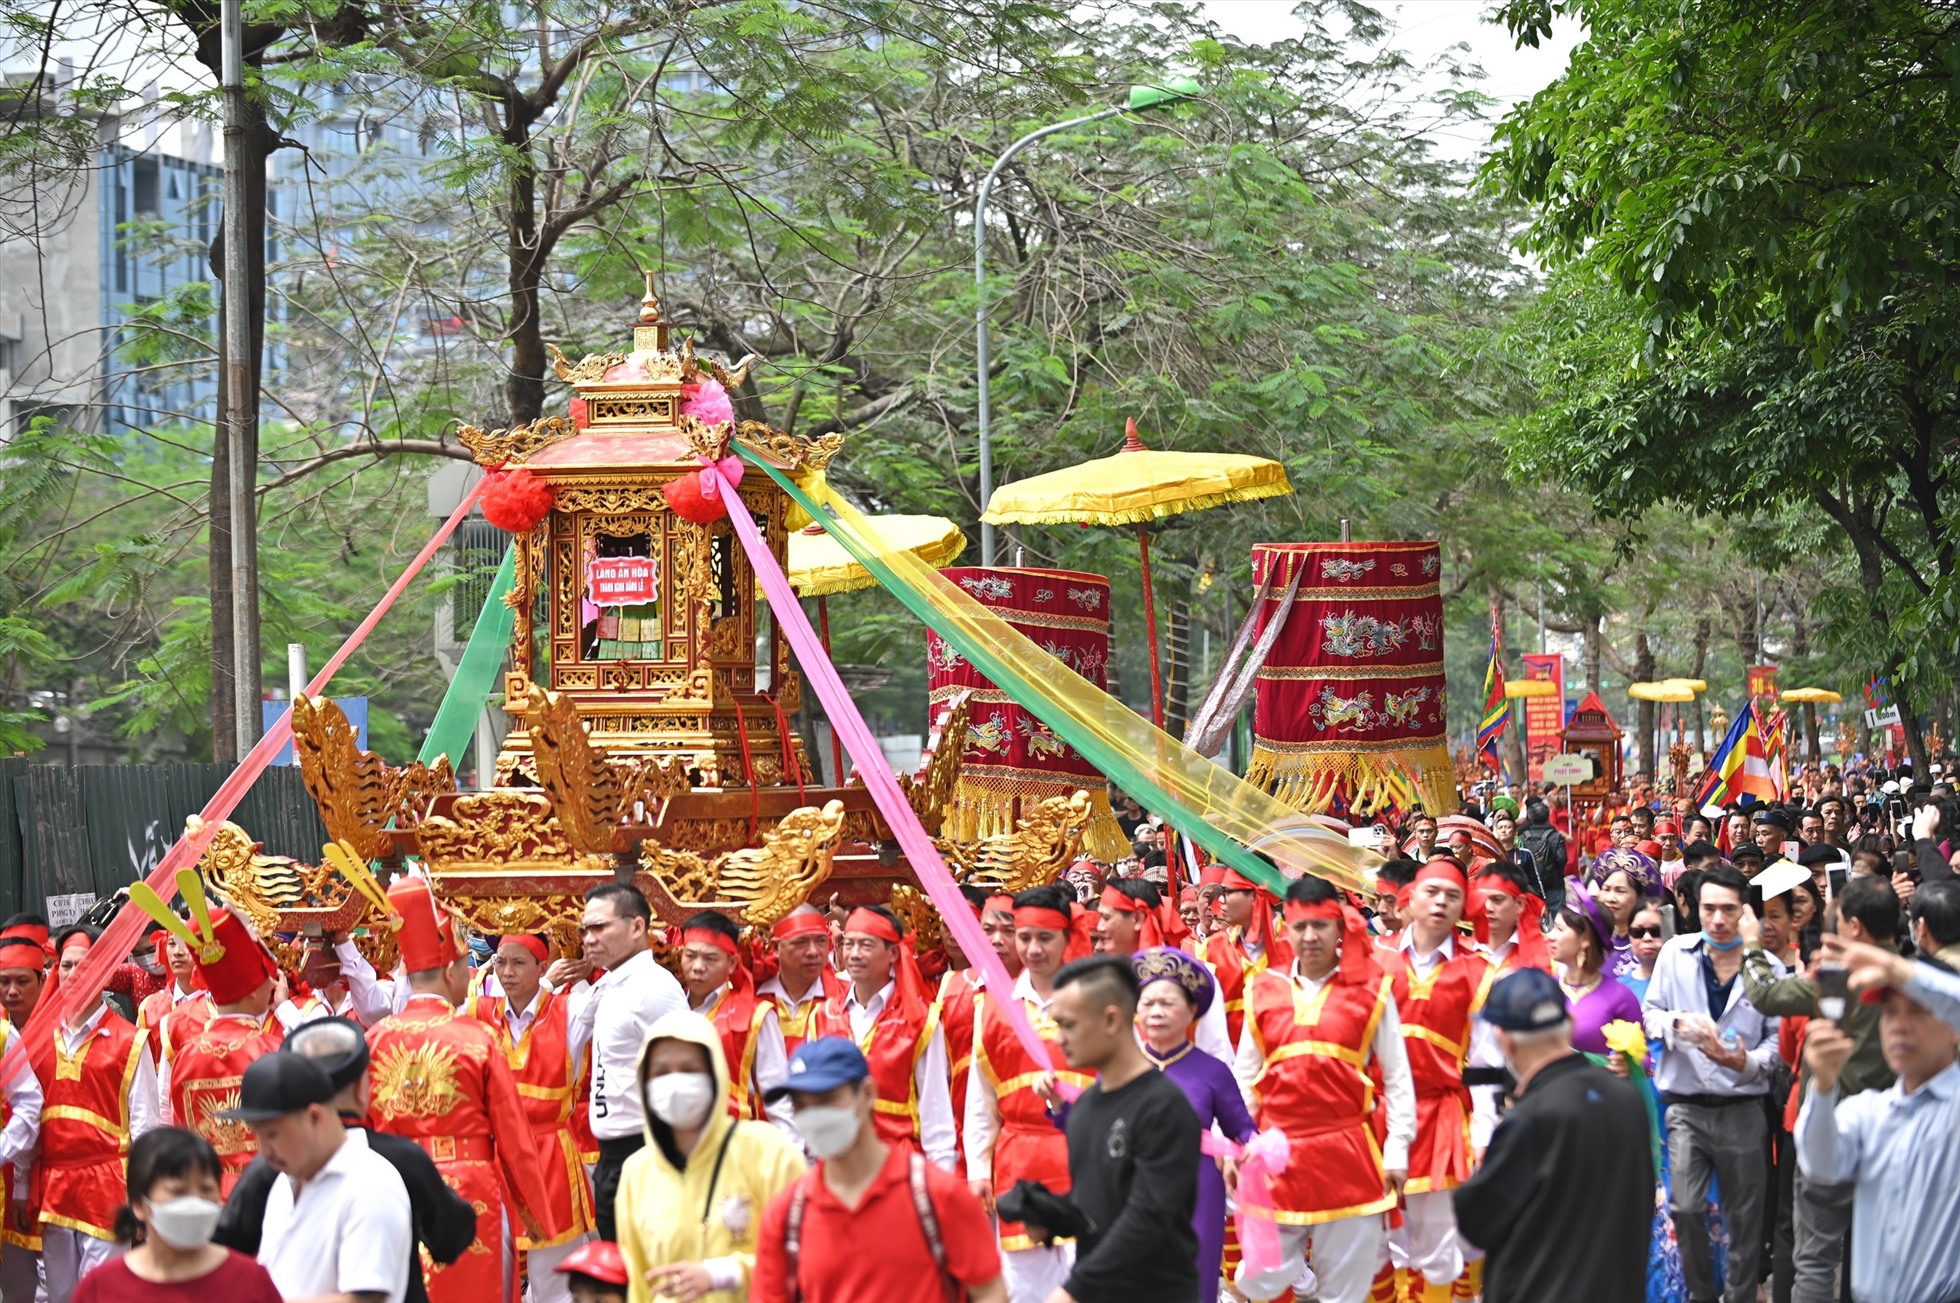 Lễ hội chùa Láng sẽ diễn ra từ ngày 25 đến 27.4.2023 (tức mùng 6 đến mùng 8 tháng Ba âm lịch). Ngày cuối cùng của lễ hội (mùng 8 tháng 3) sẽ là các hoạt động dâng hương, trò chơi dân gian.